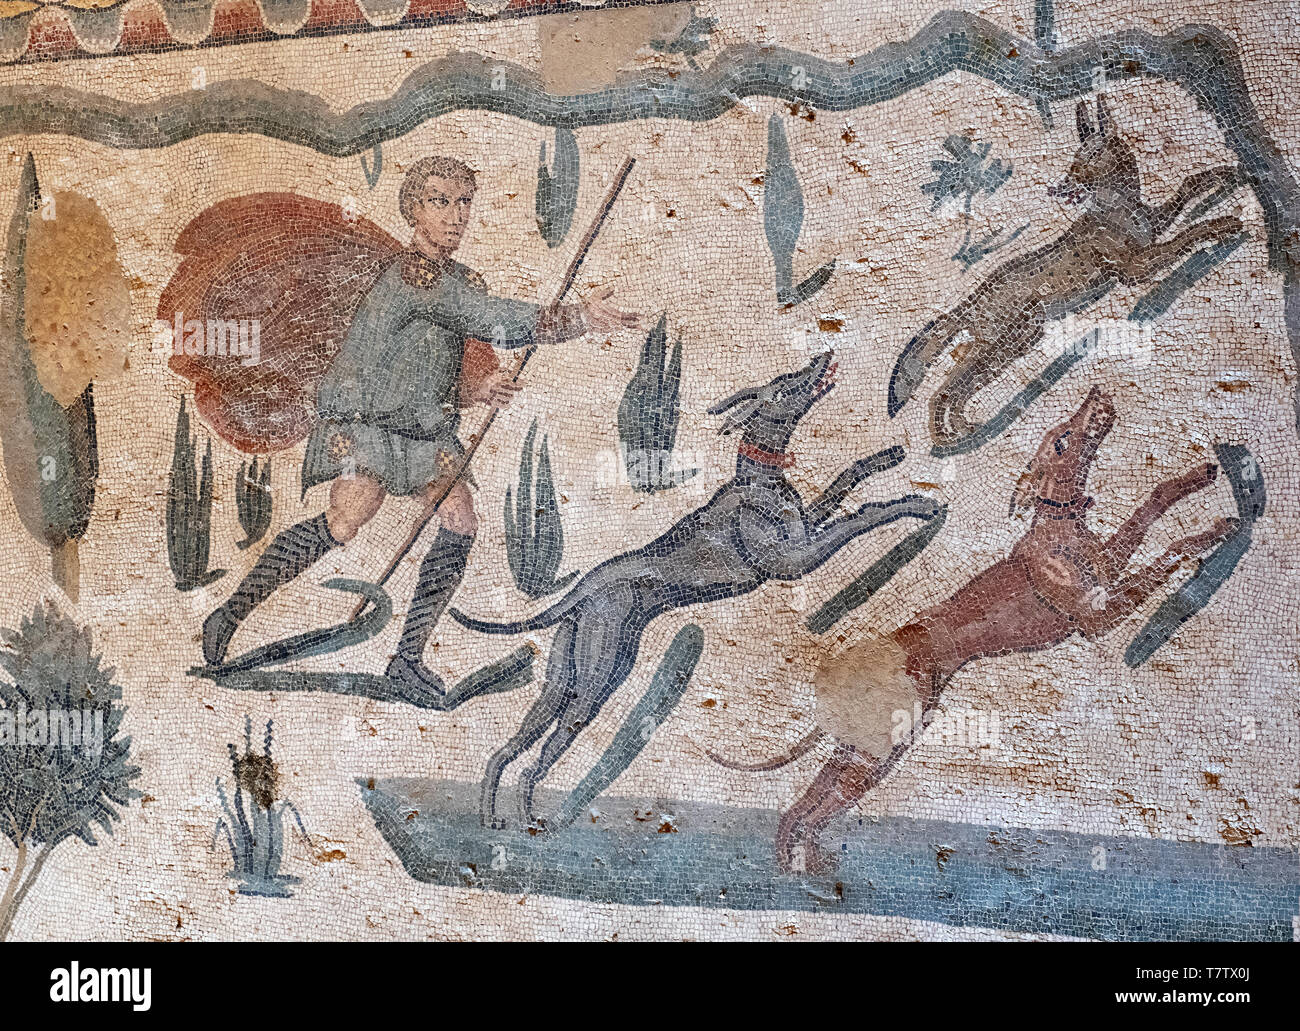 Scene from the Small Game Hunt roman mosaic in the Villa Romana del Casale, Piazza Armerina, Sicily, Italy. Stock Photo